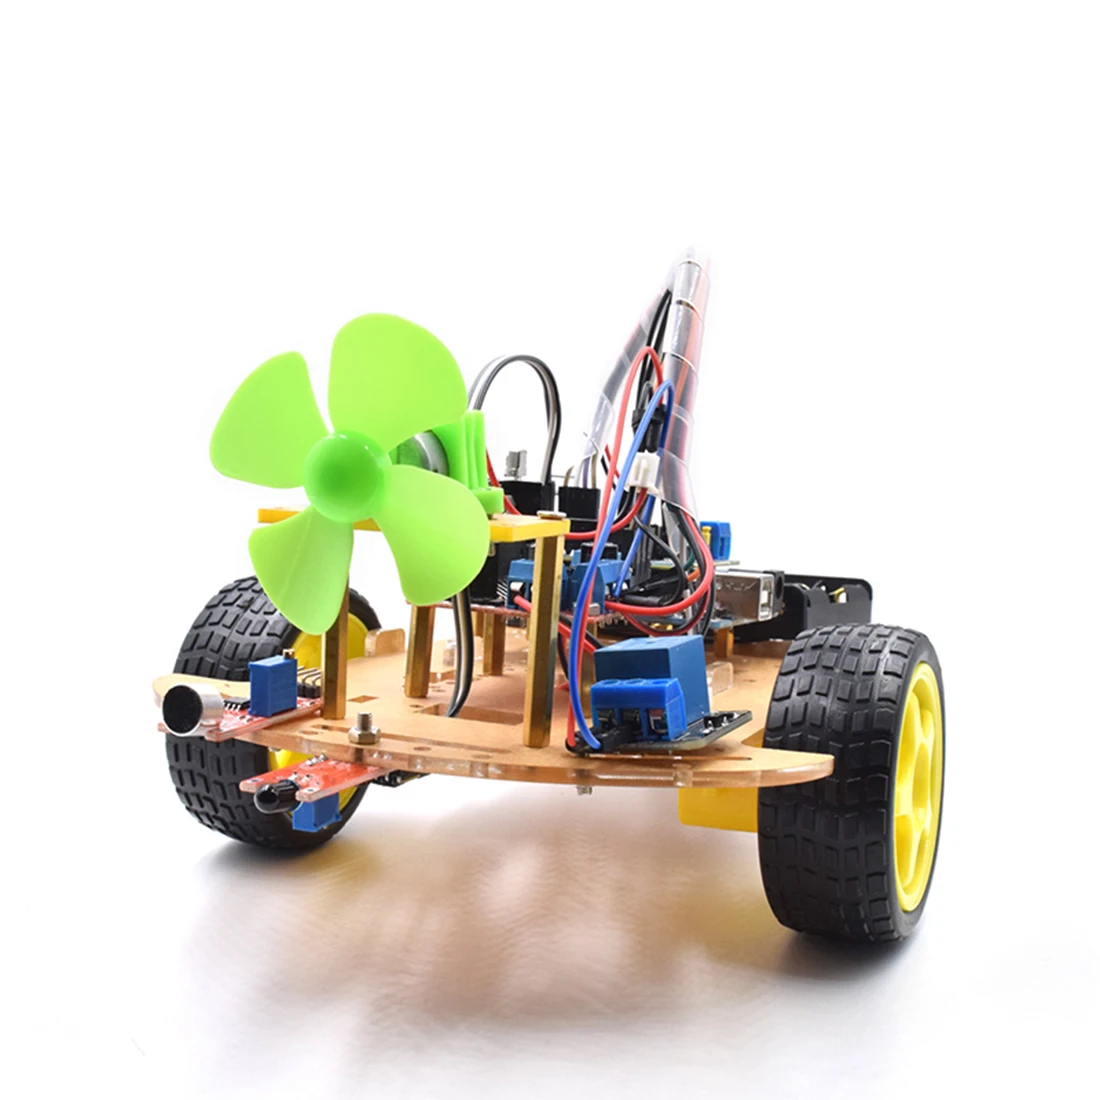 Rowsfire беспроводной пульт дистанционного управления умный автомобиль инфракрасный контроль робот автомобиль для Arduino высоко-обучающая программируемая игрушка для детей и взрослых